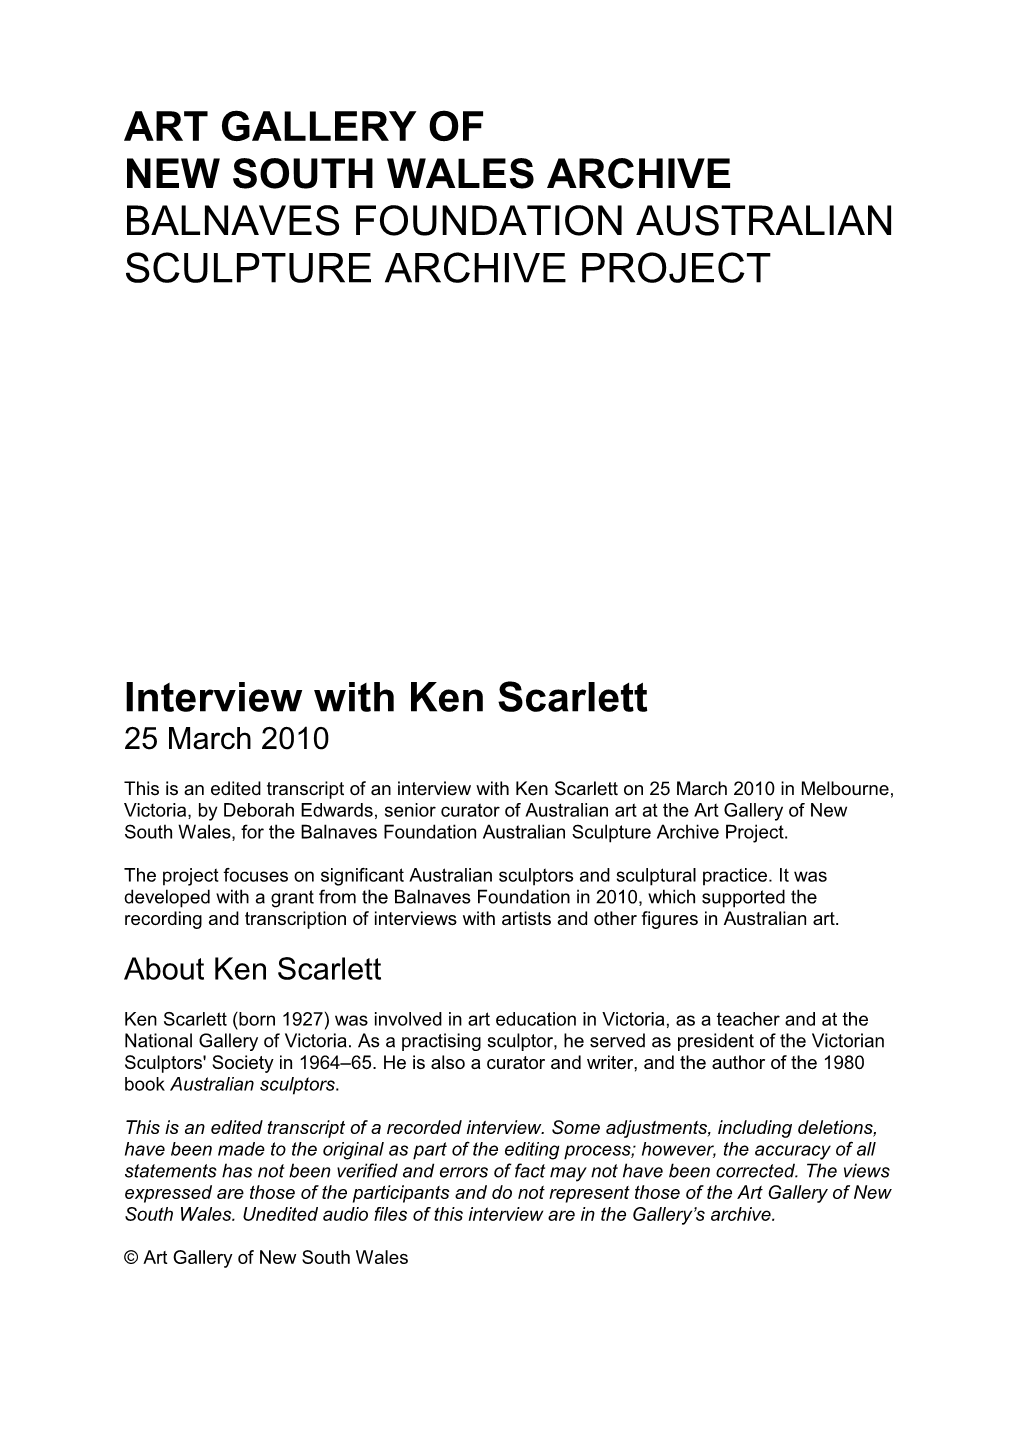 Interview with Ken Scarlett 25 March 2010